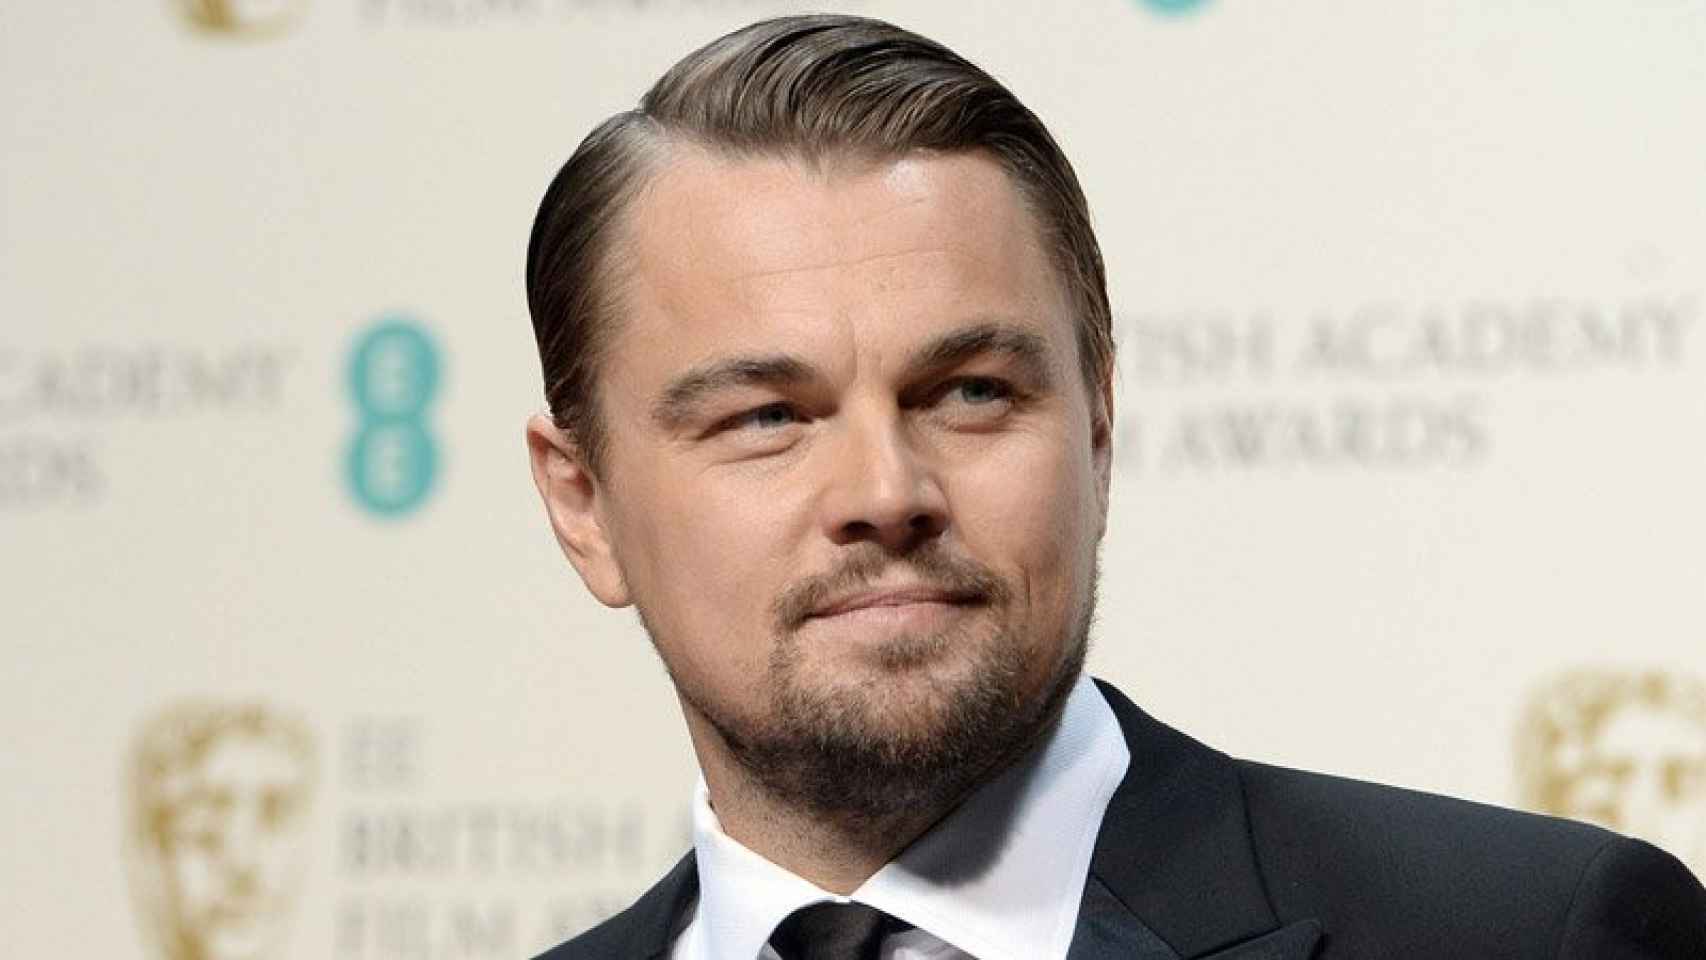 El actor y propietario de la productora Appian Way, Leonardo DiCaprio